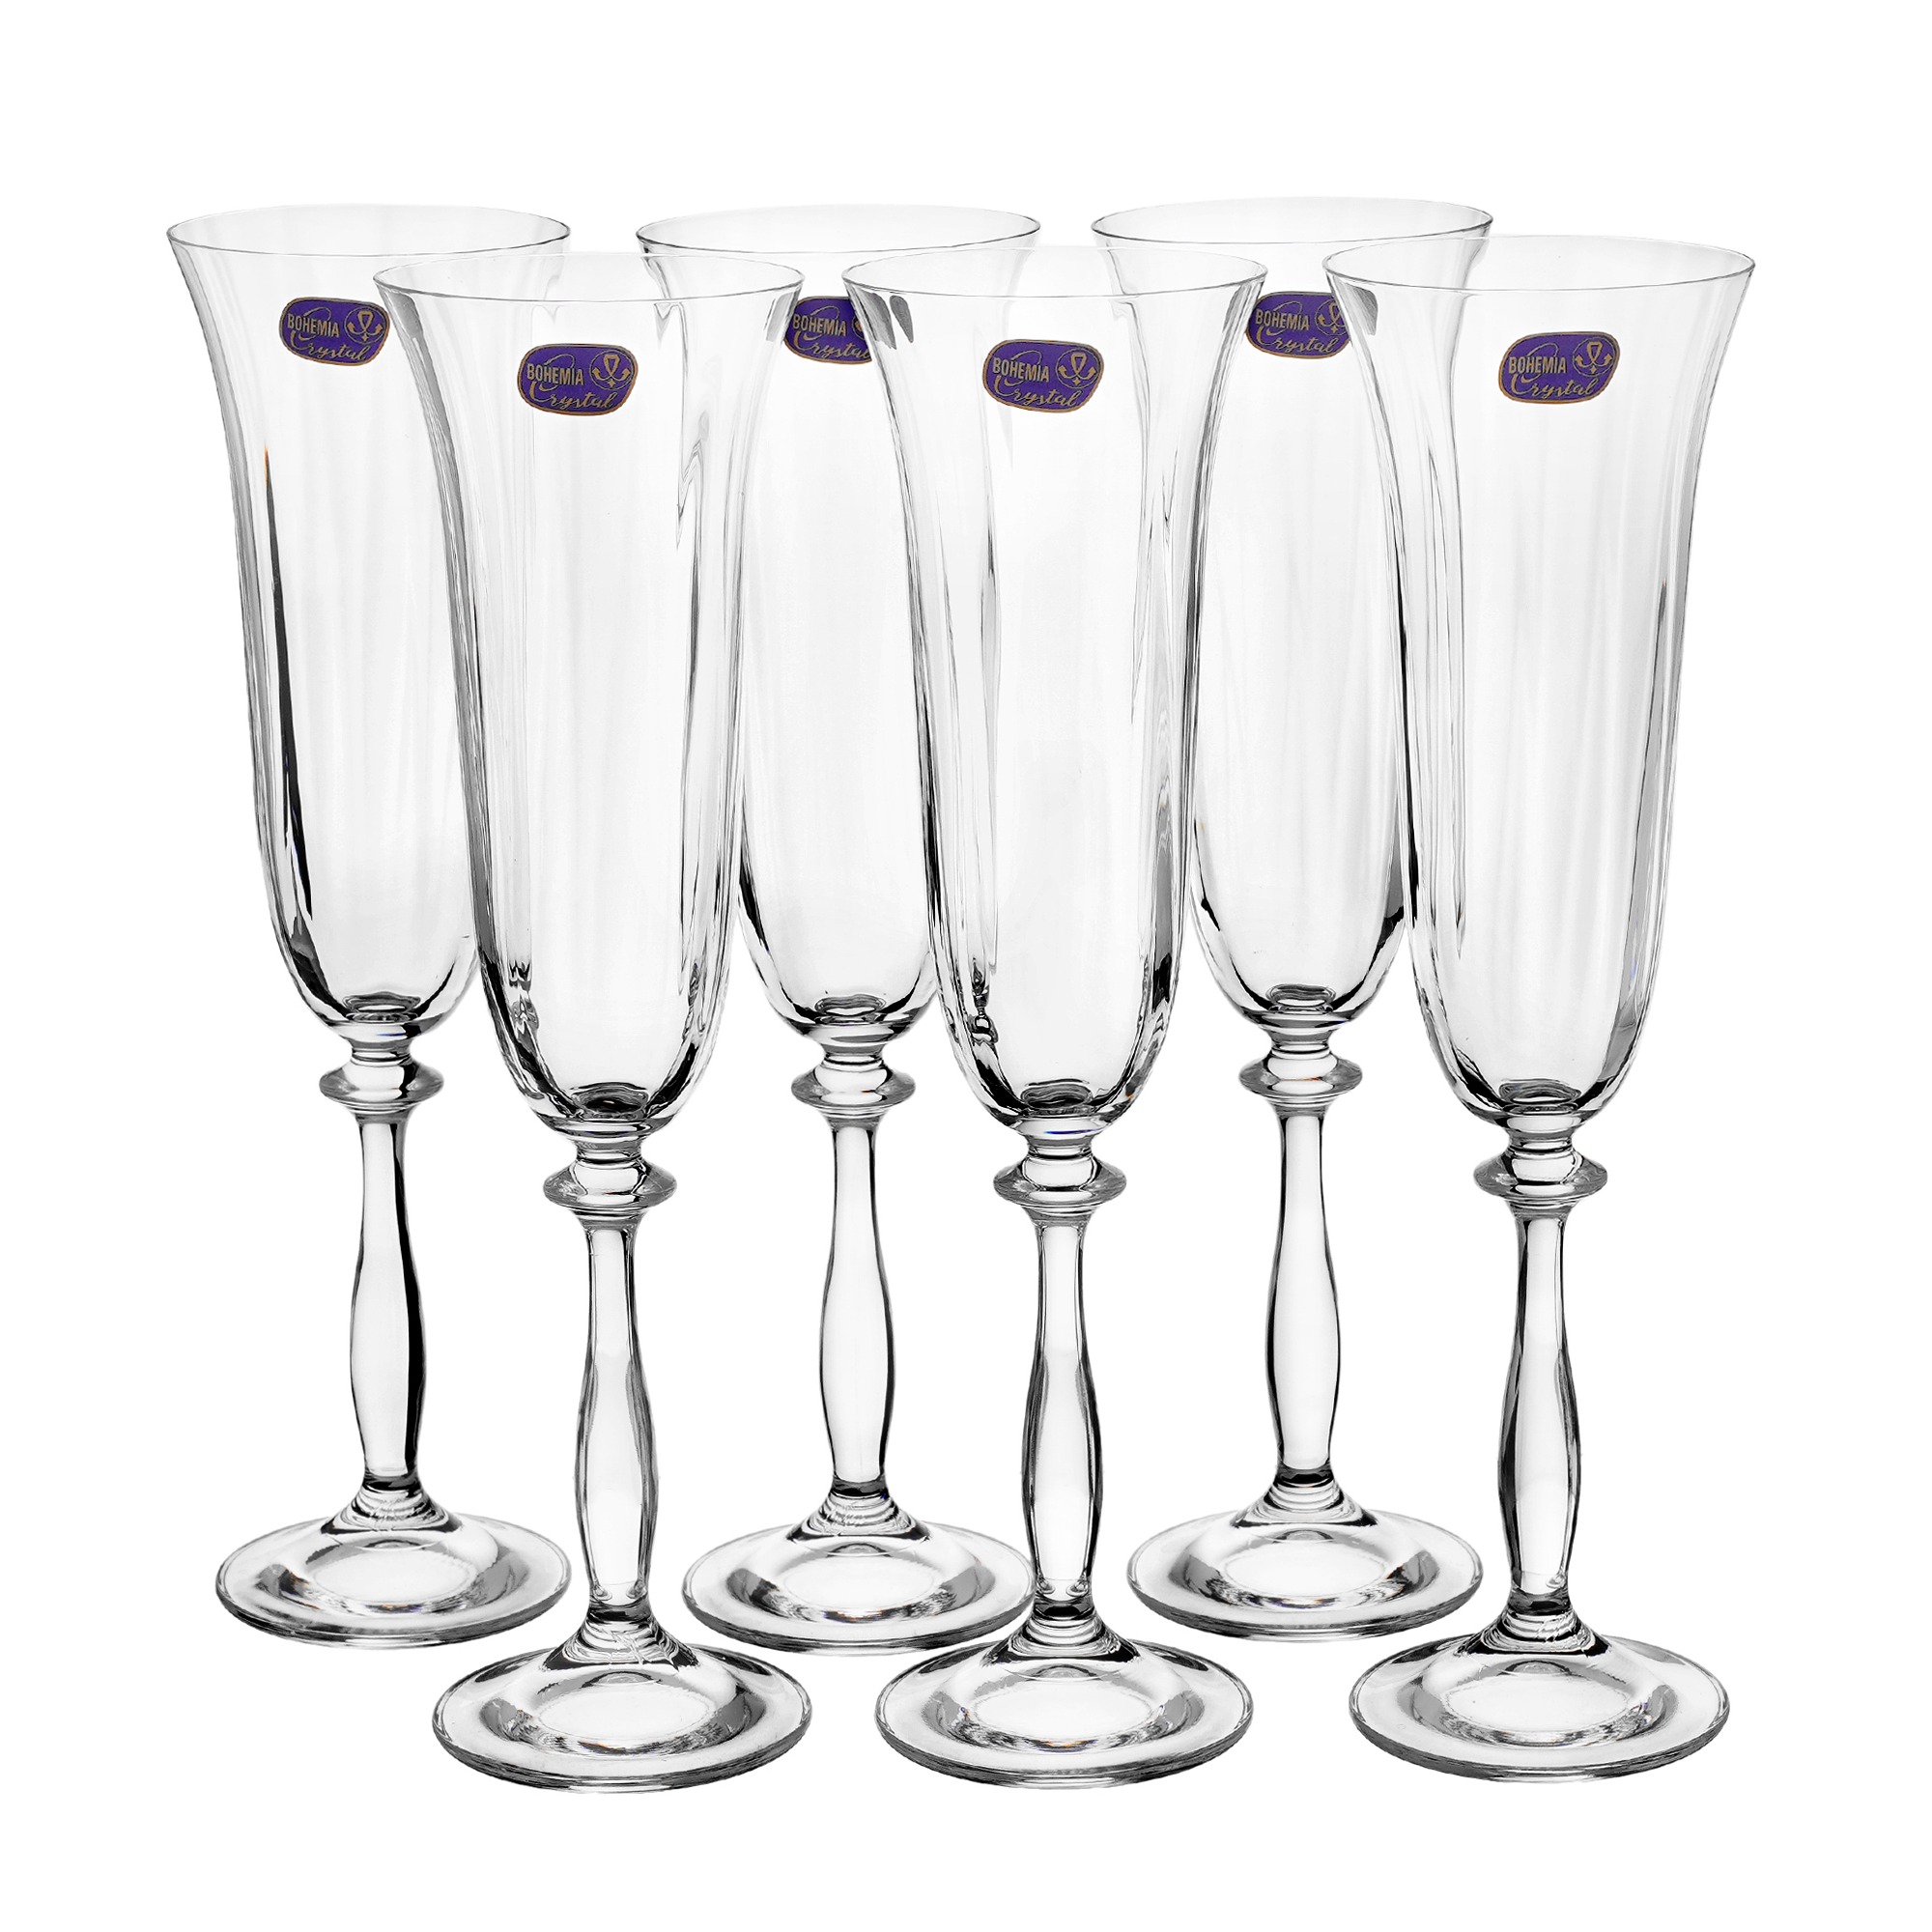 Набор бокалов Crystalex Анжела для шампанского 190 мл 6 шт набор бокалов для шампанского bohemia crystal анжела 190 мл 6 шт